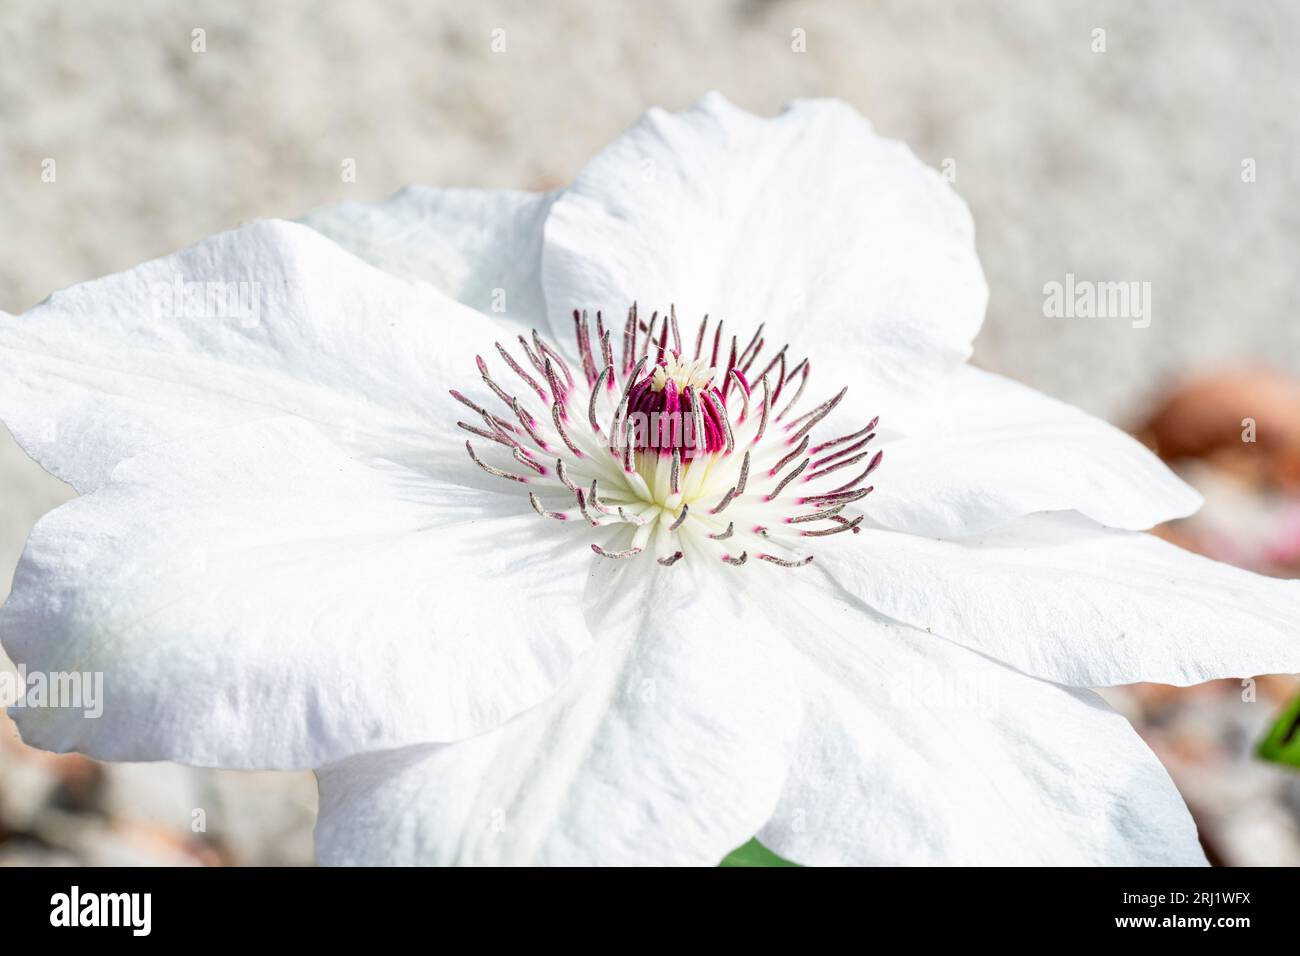 Gros plan d'une fleur de jardin, Virginsbower asiatique, Clematic Florida. Macros prises d'une partie des pétales, avec l'anthère et le stigmate au centre. Banque D'Images